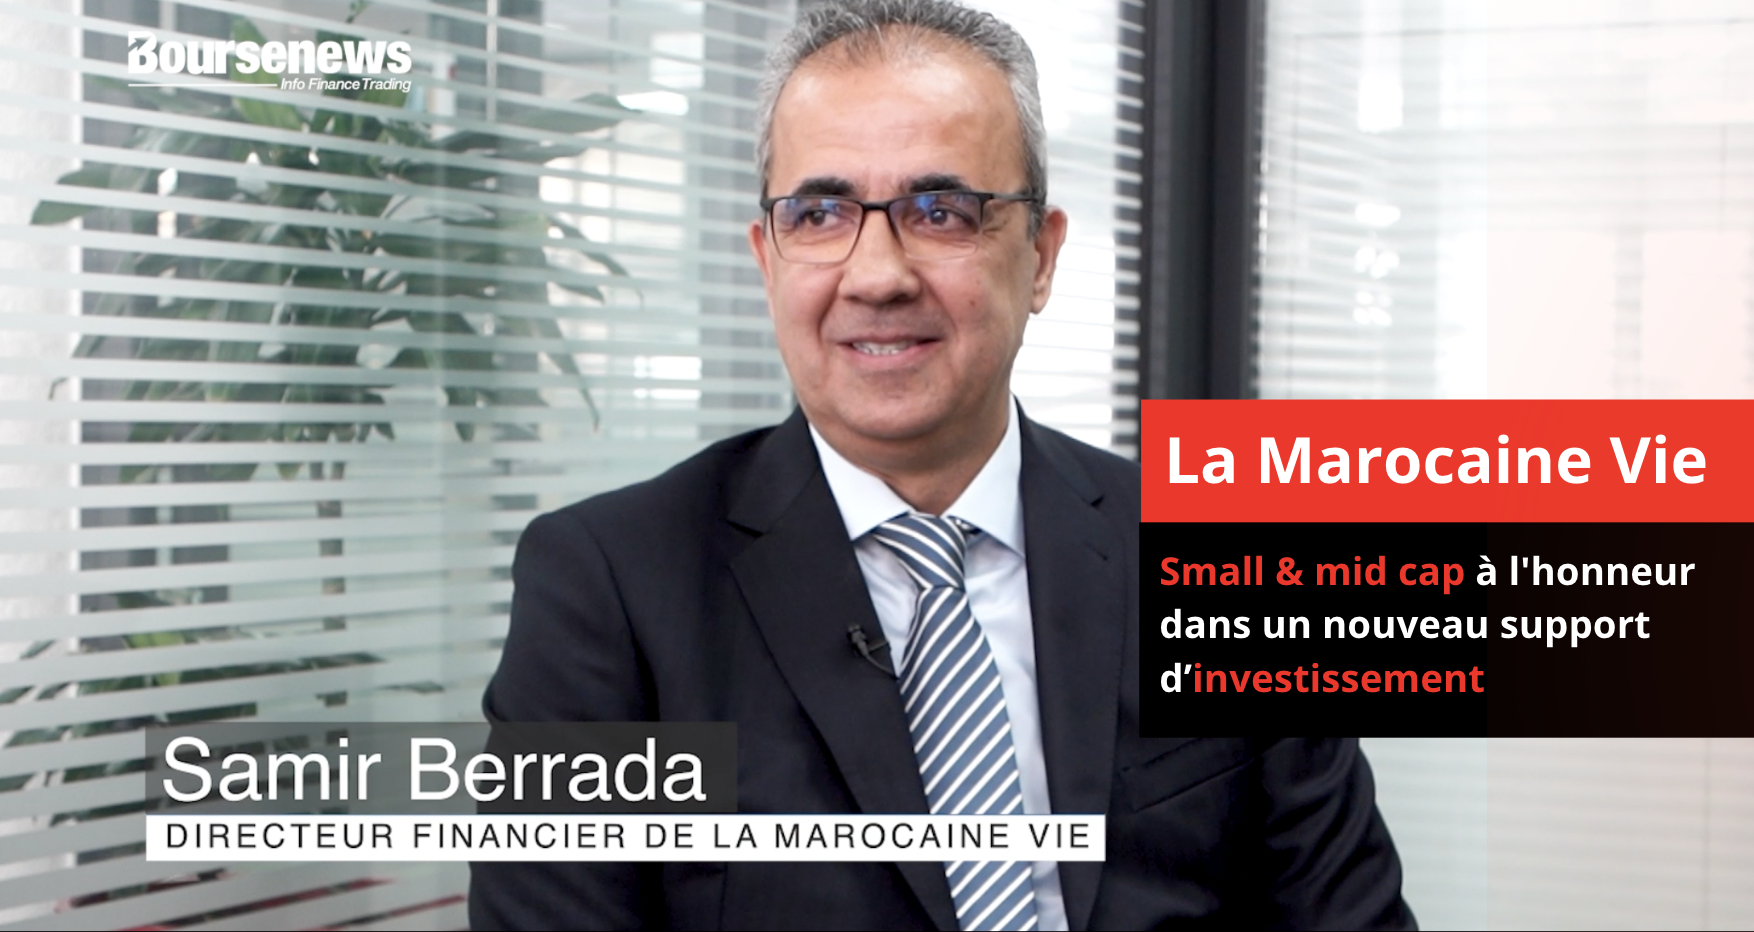 La Marocaine Vie: Small & mid cap à l'honneur dans un nouveau support d’investissement